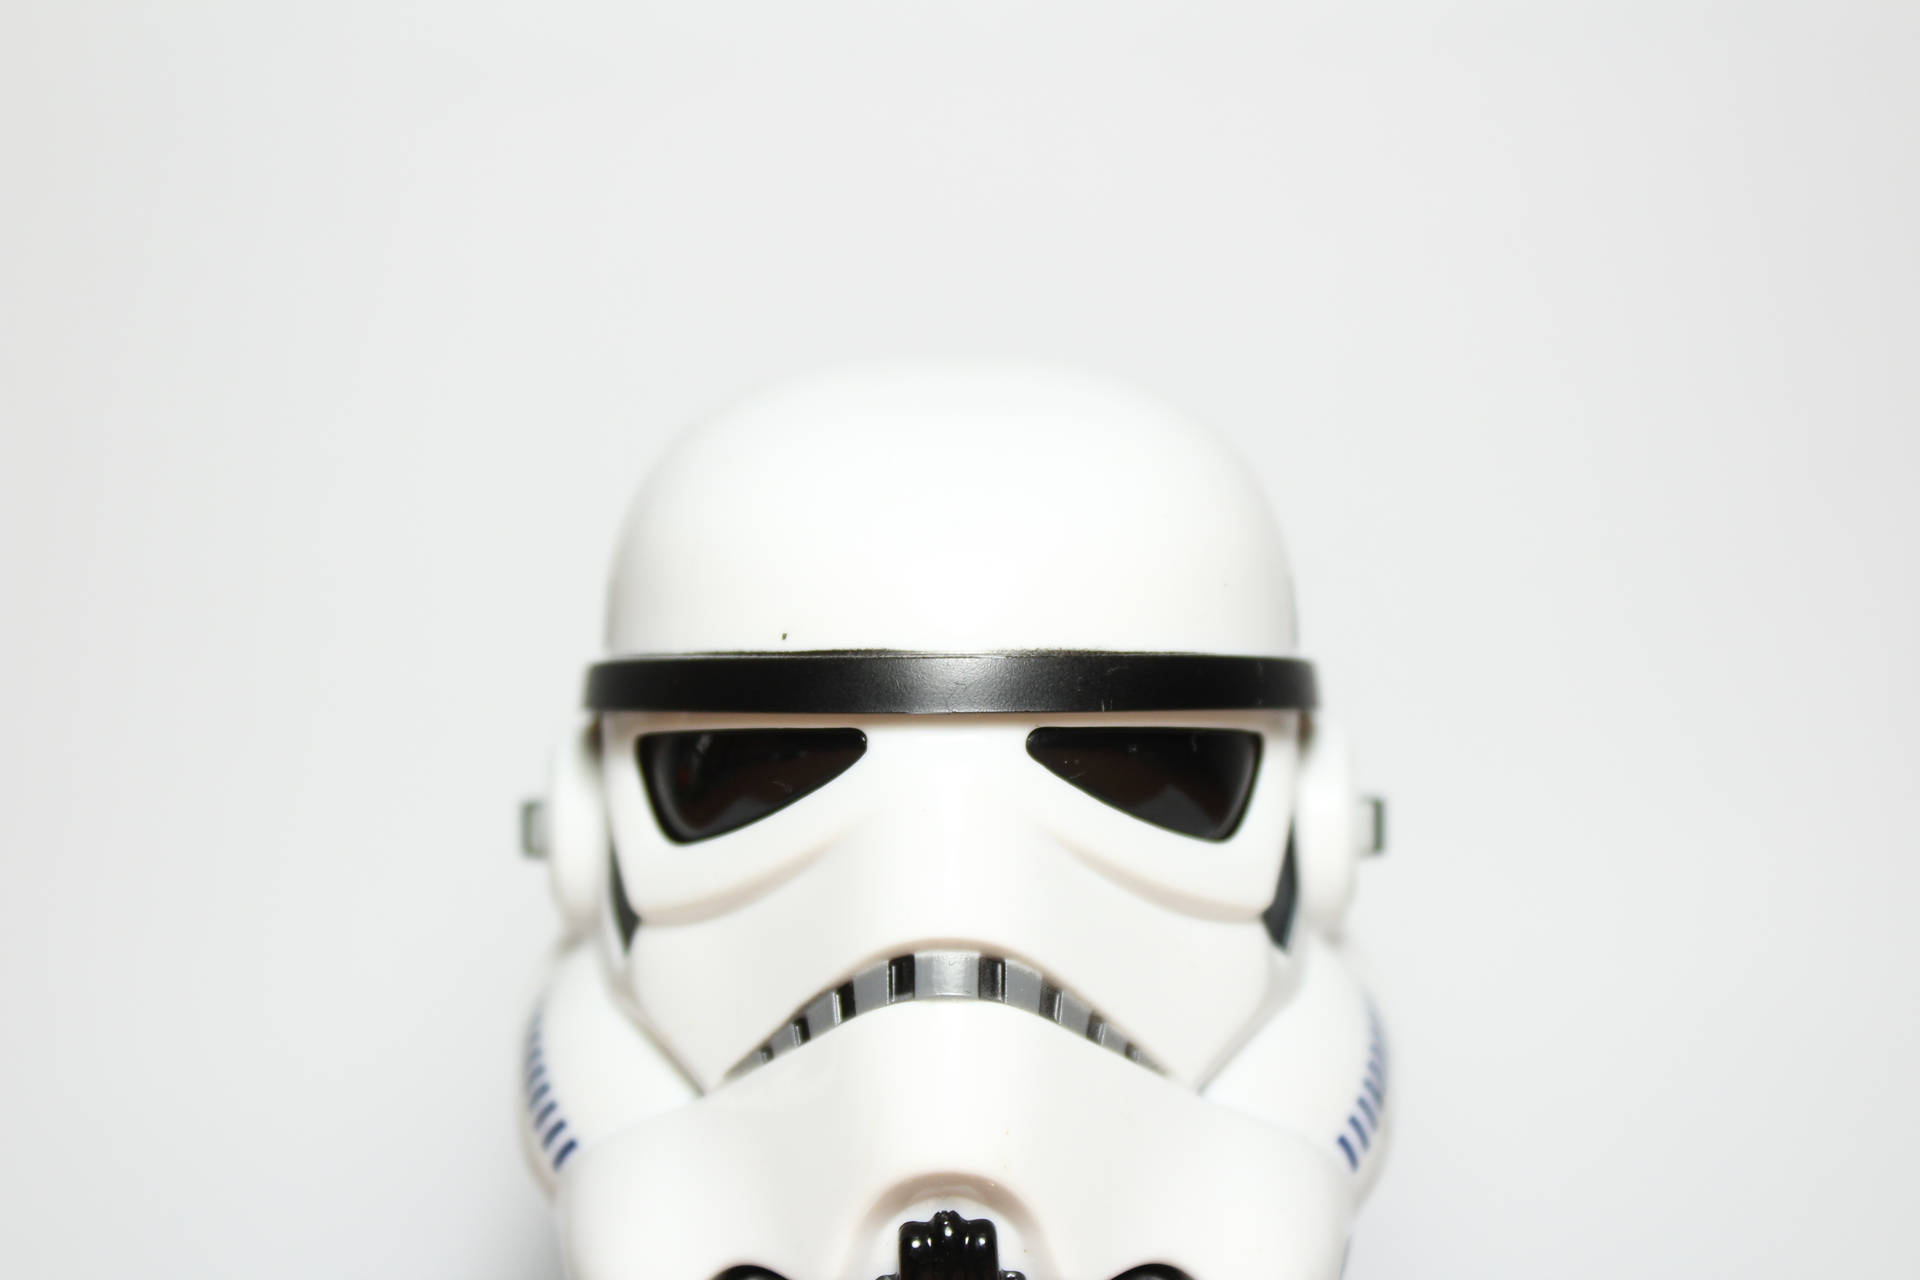 Star Wars Imperial Stormtrooper Helmet Background